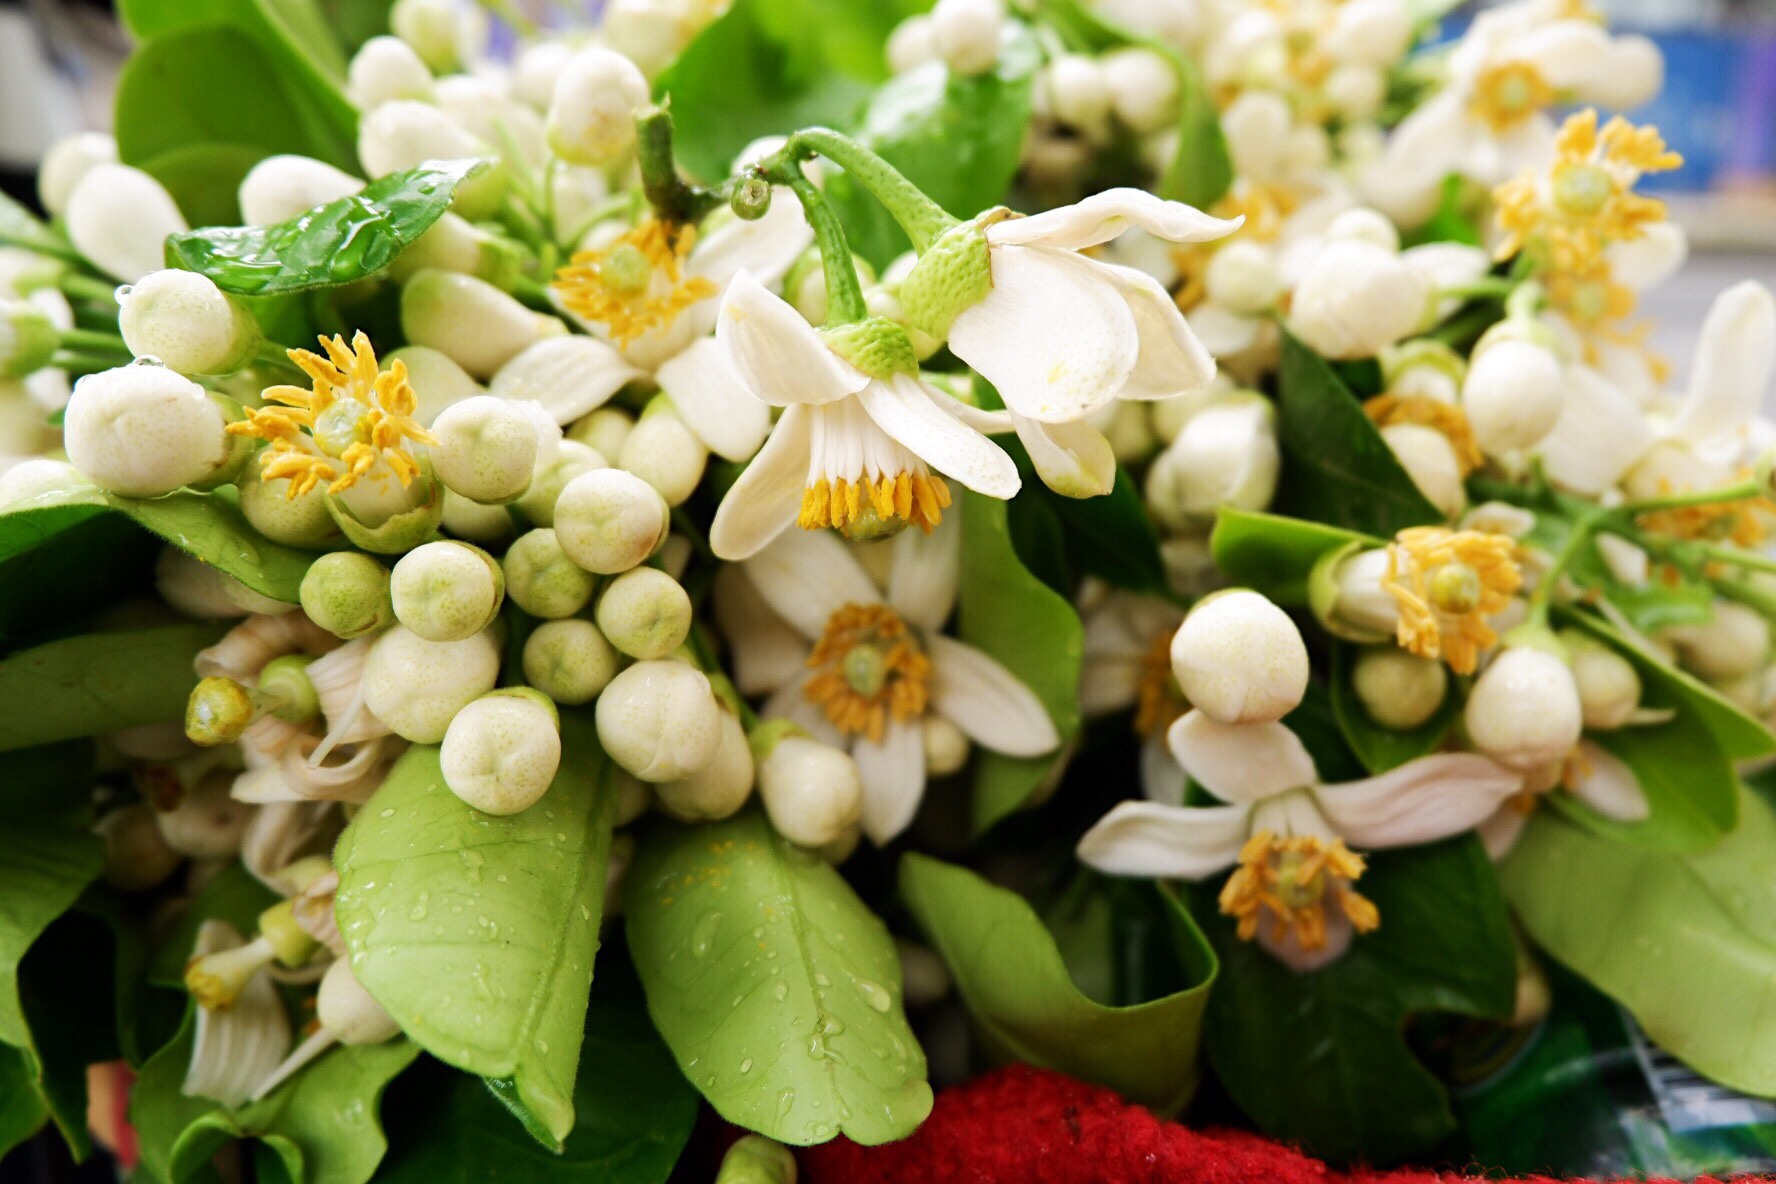 Tổng hợp những hình ảnh đẹp nhất về mùi hoa bưởi tháng ba - [Kích thước hình ảnh: 1776x1184 px]